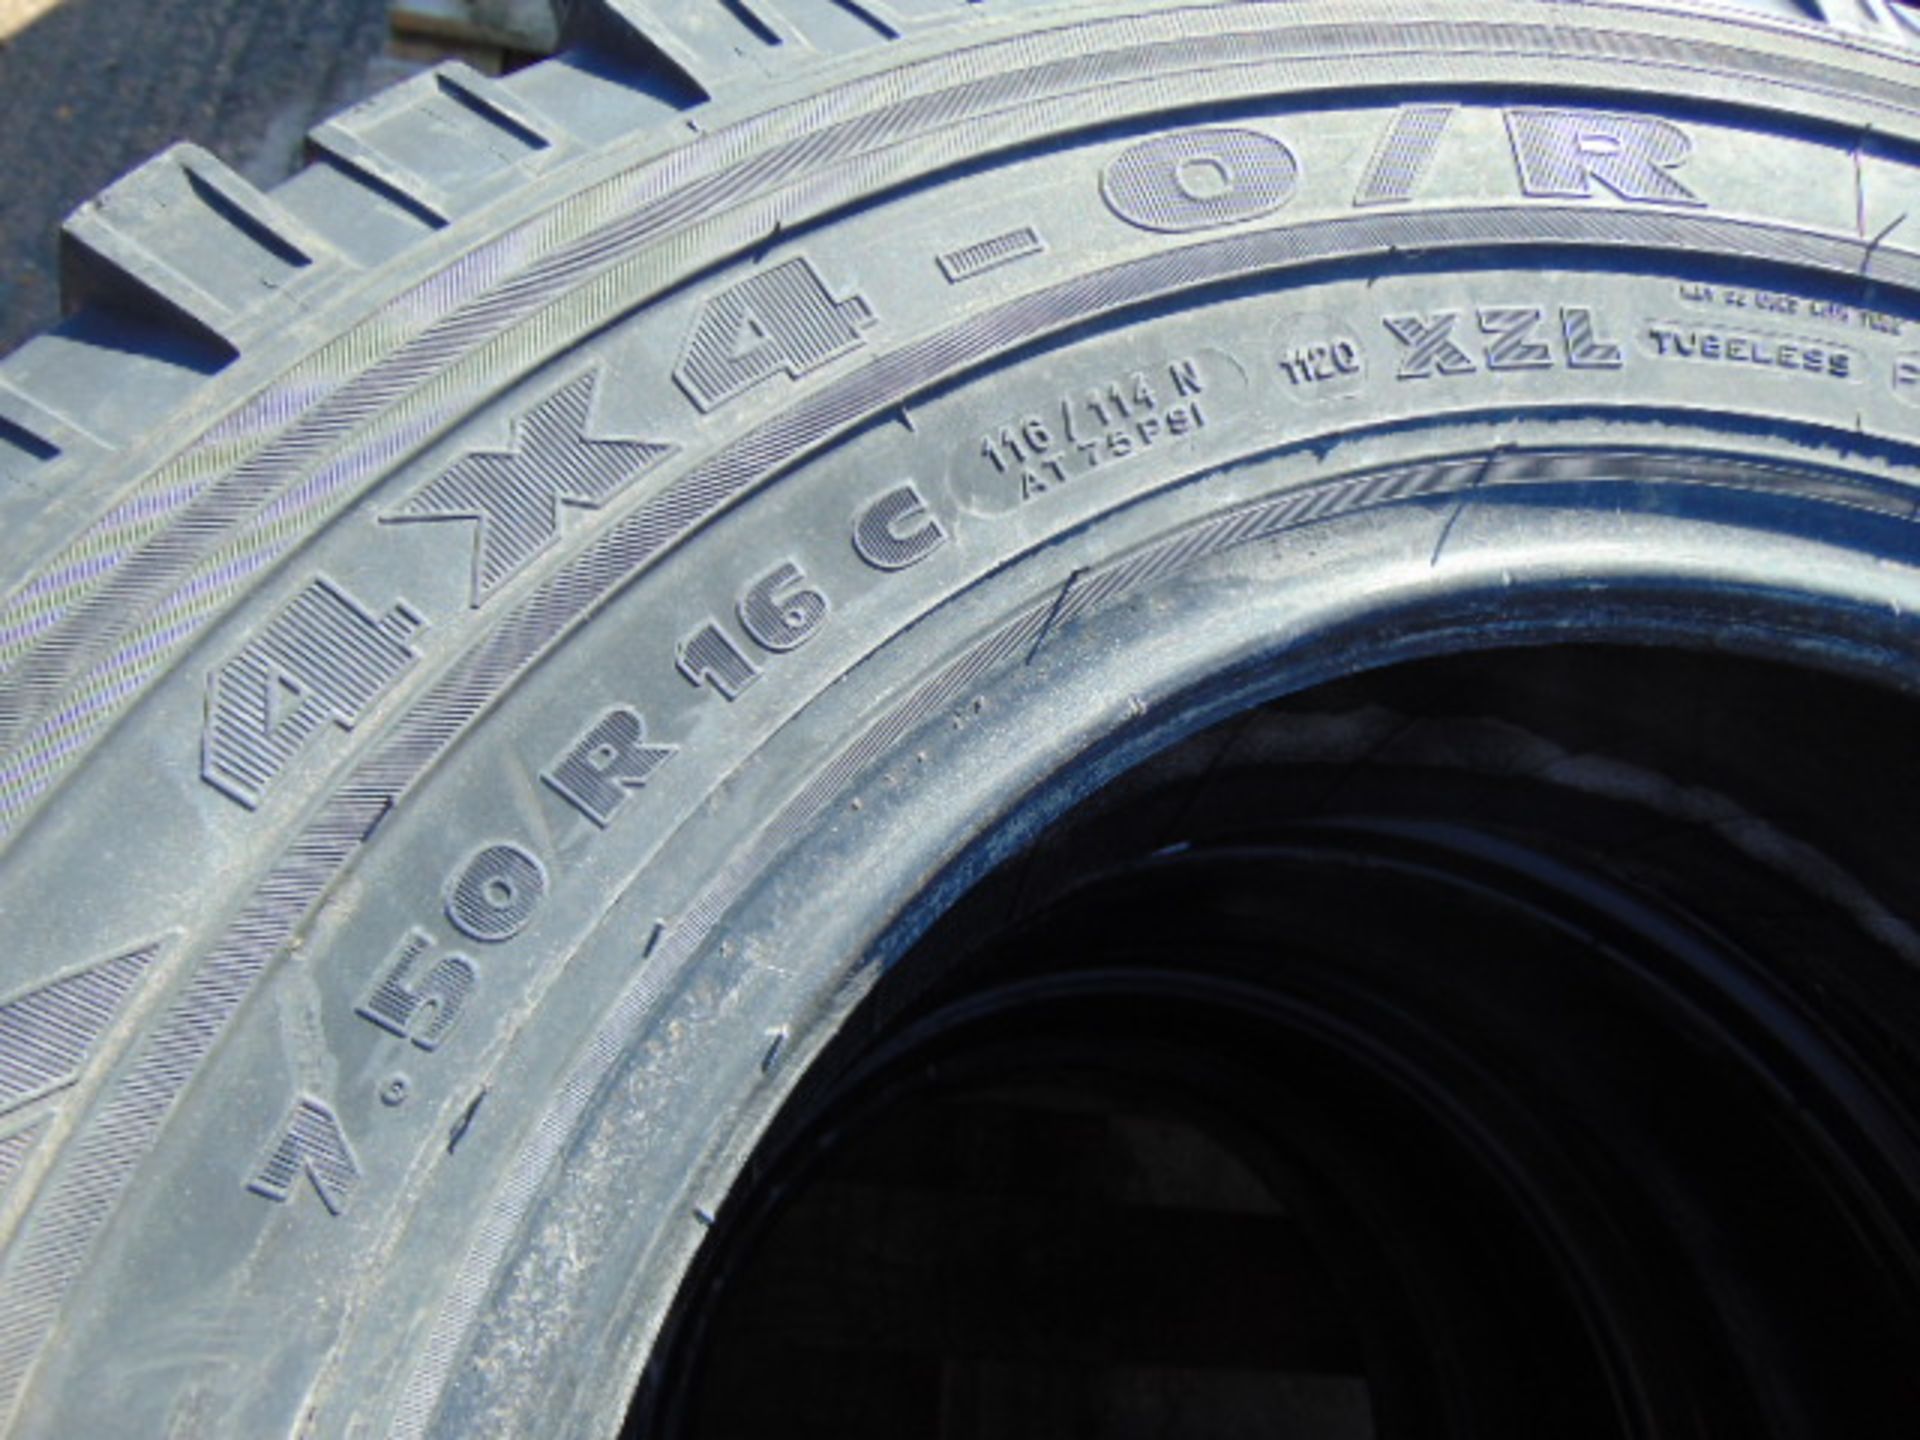 4 x Michelin XZL 7.50 R16 Tyres - Bild 5 aus 5